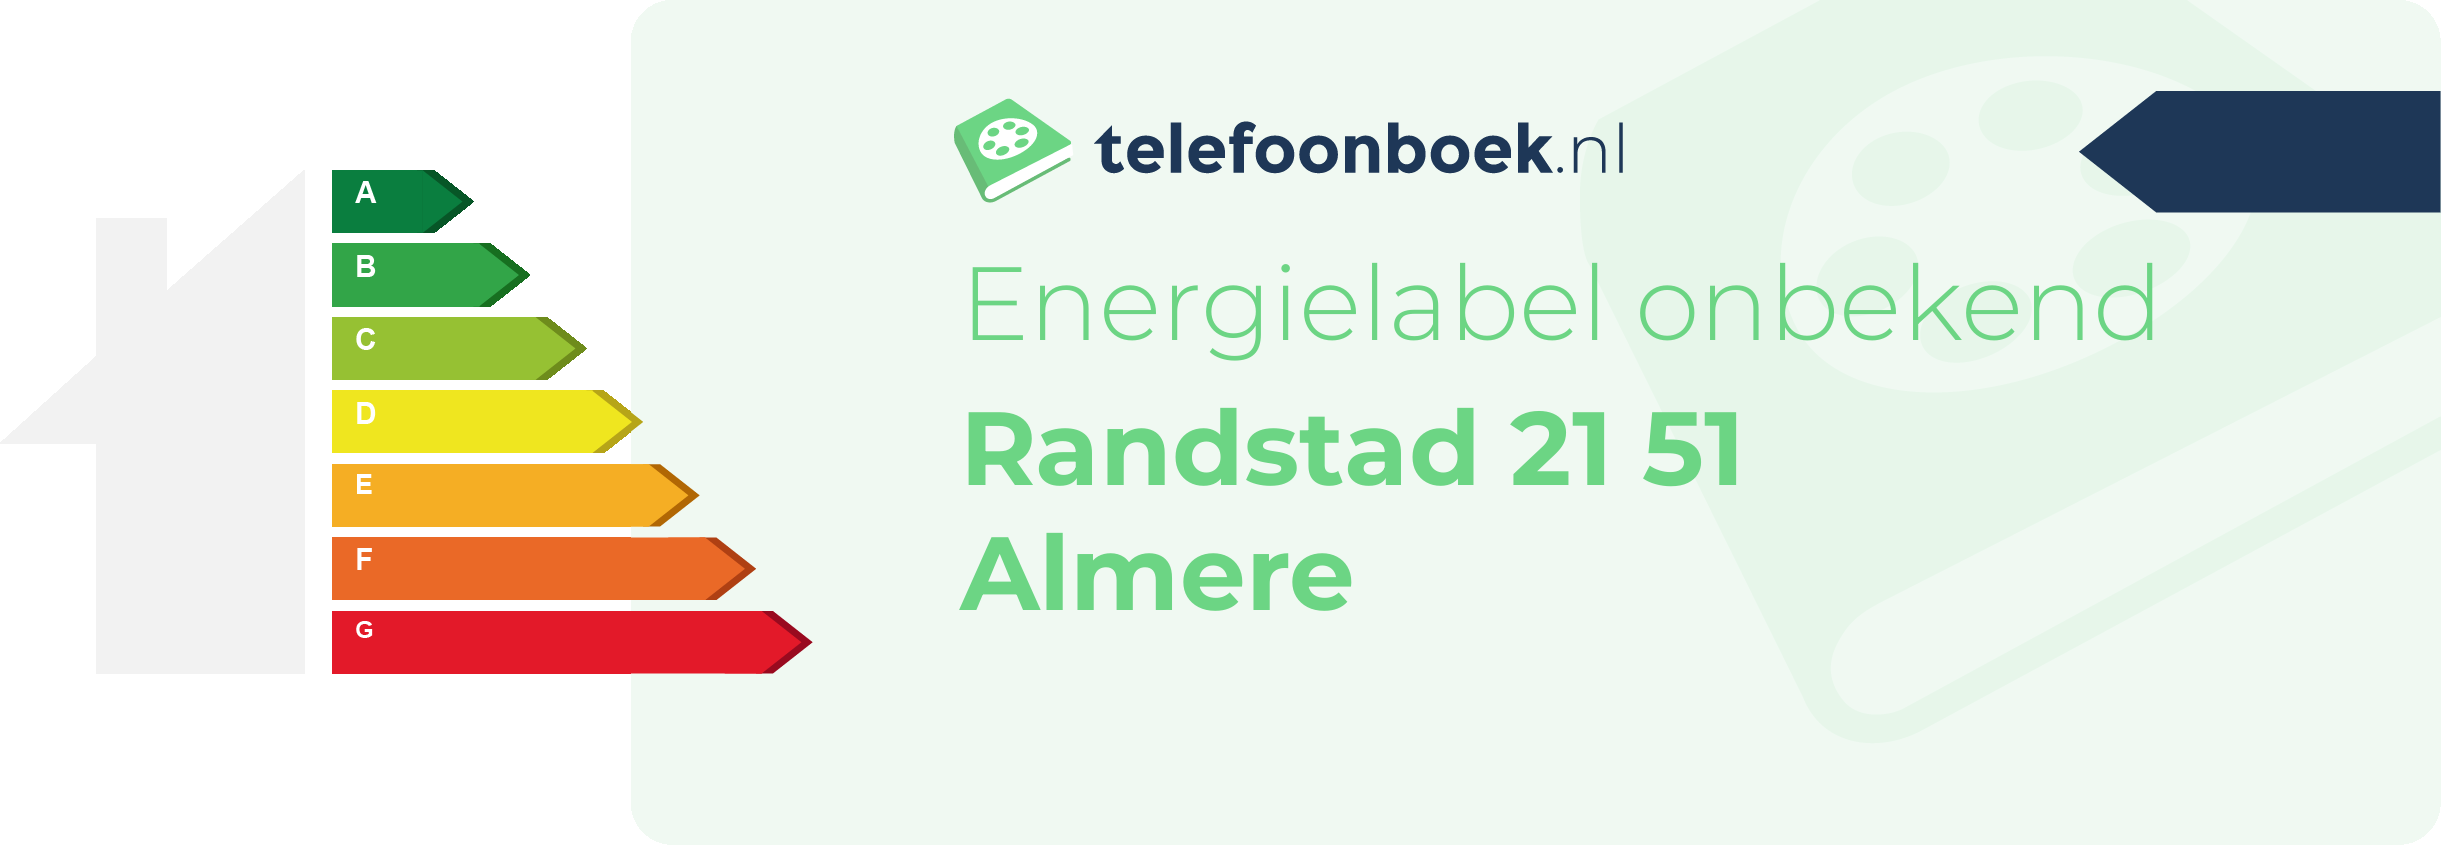 Energielabel Randstad 21 51 Almere